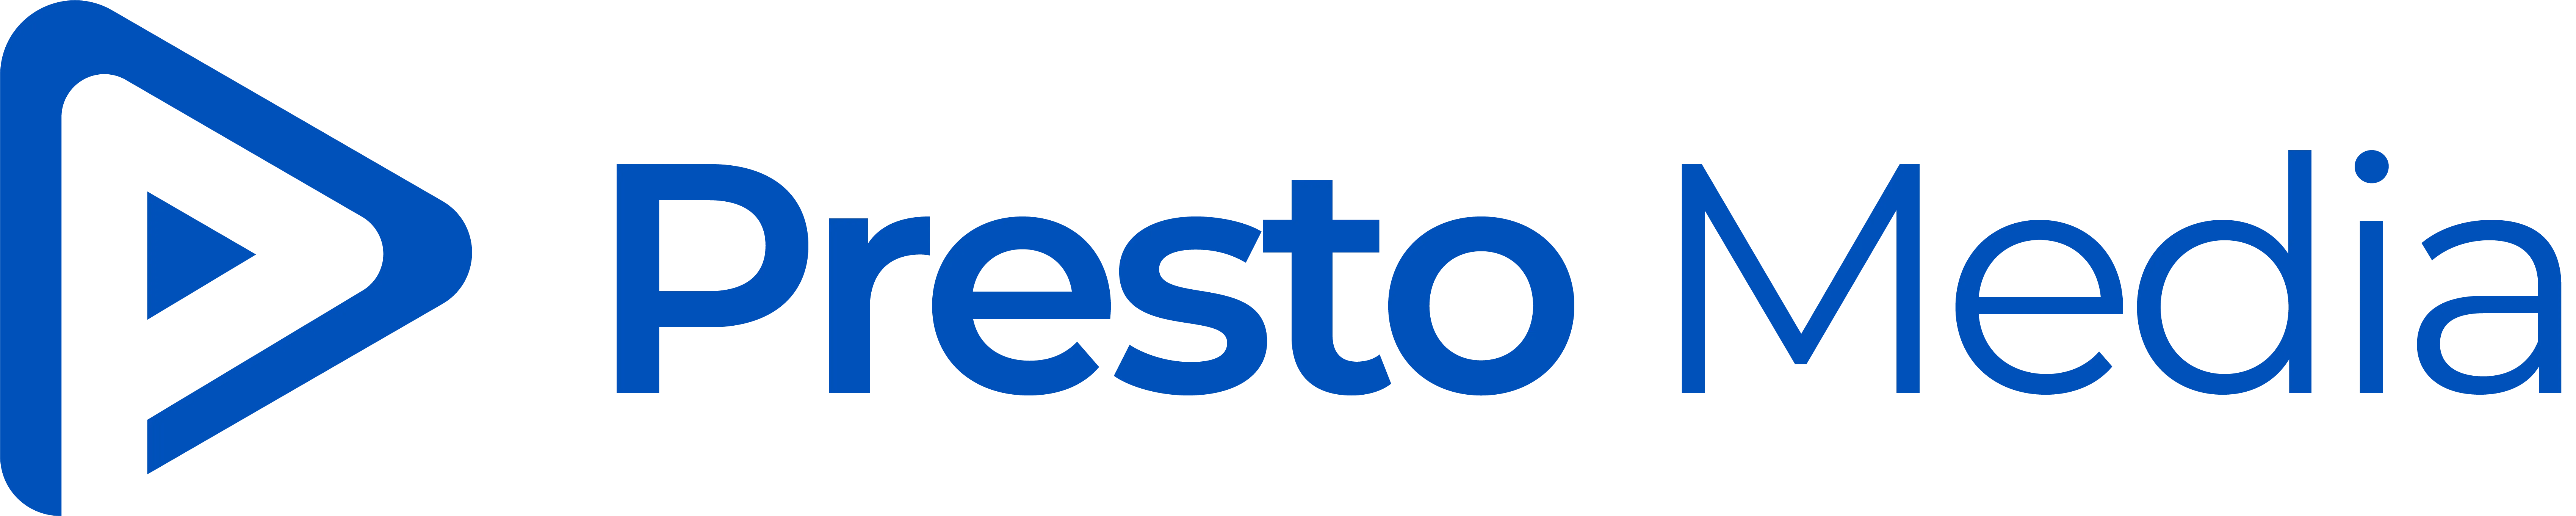 Presto Media logo